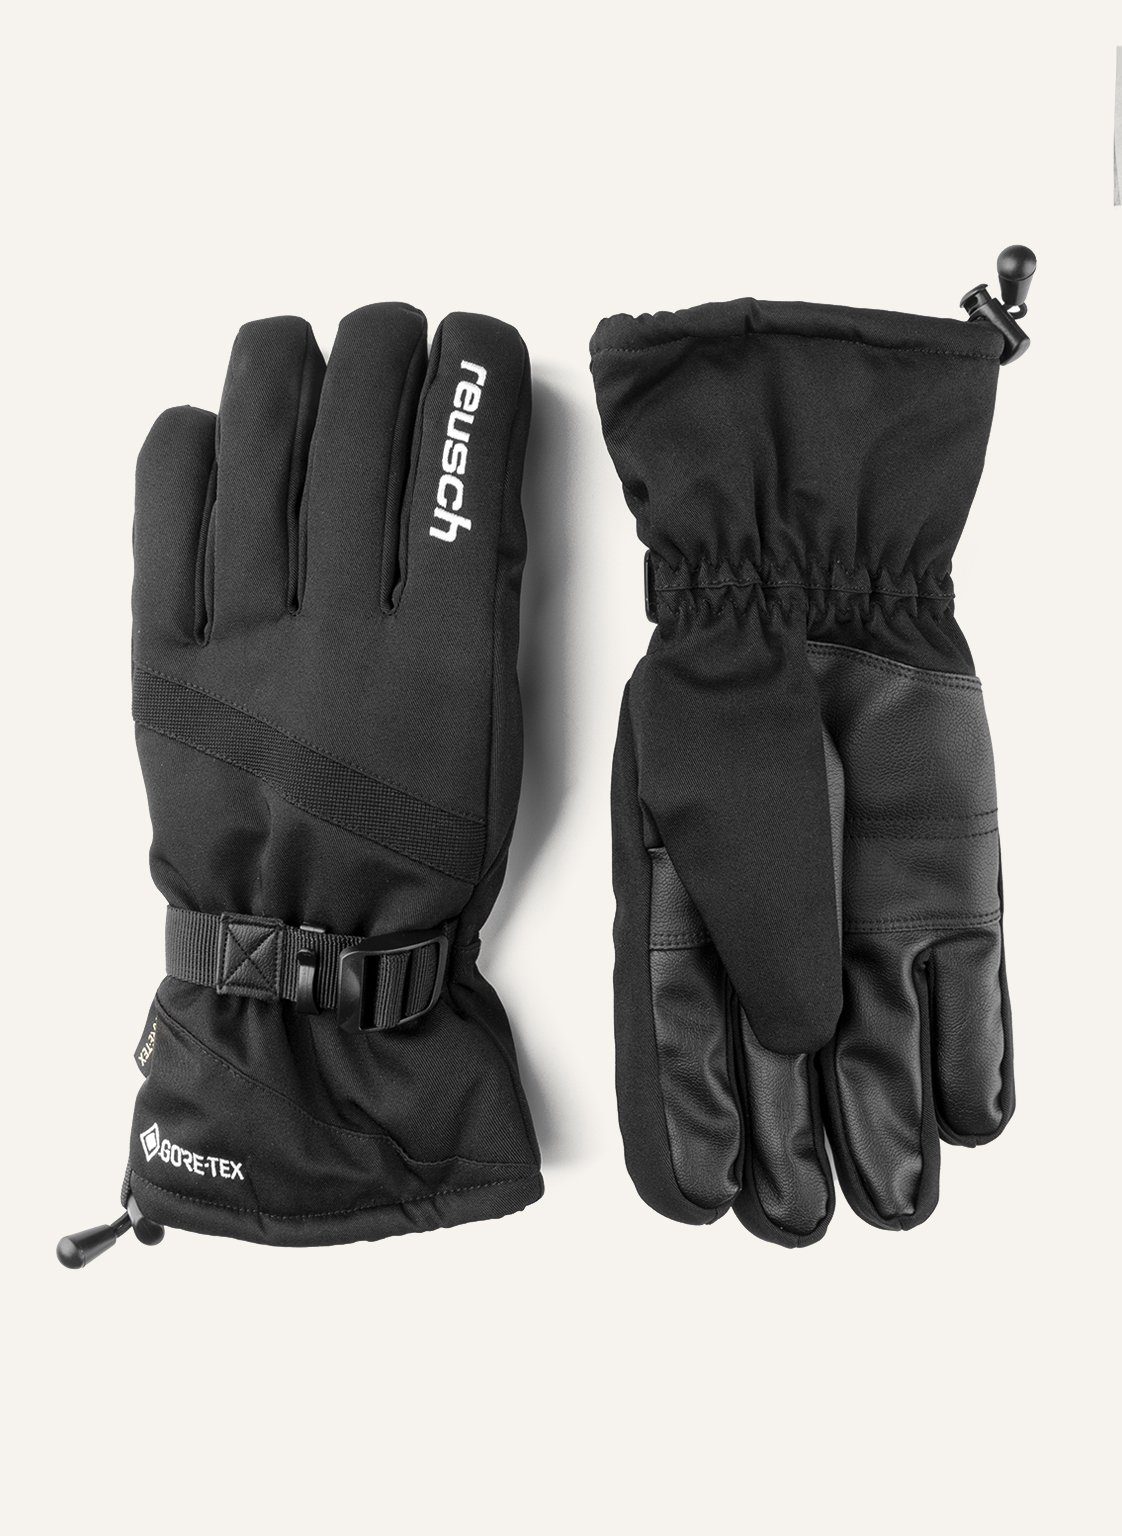 Reusch Skihandschuhe Warm Glove aus Material Winter und wasserdichtem GORE-TEX atmungsaktivem